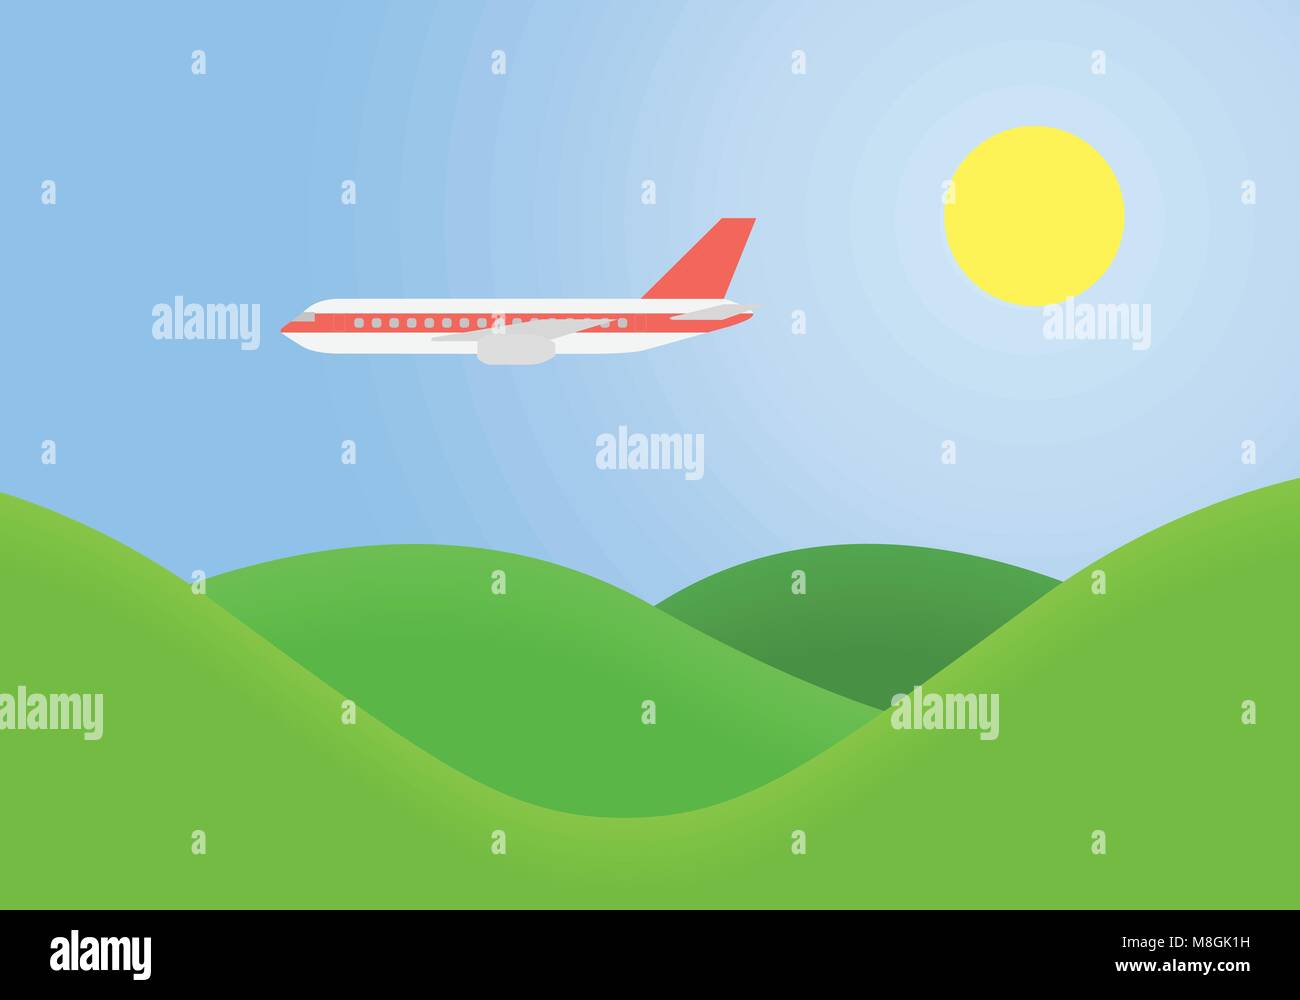 Paysage verdoyant avec des collines herbeuses et flying airplane sur bleu ciel avec sun - vecteur, adapté pour la publicité sur les locations et voyage Illustration de Vecteur